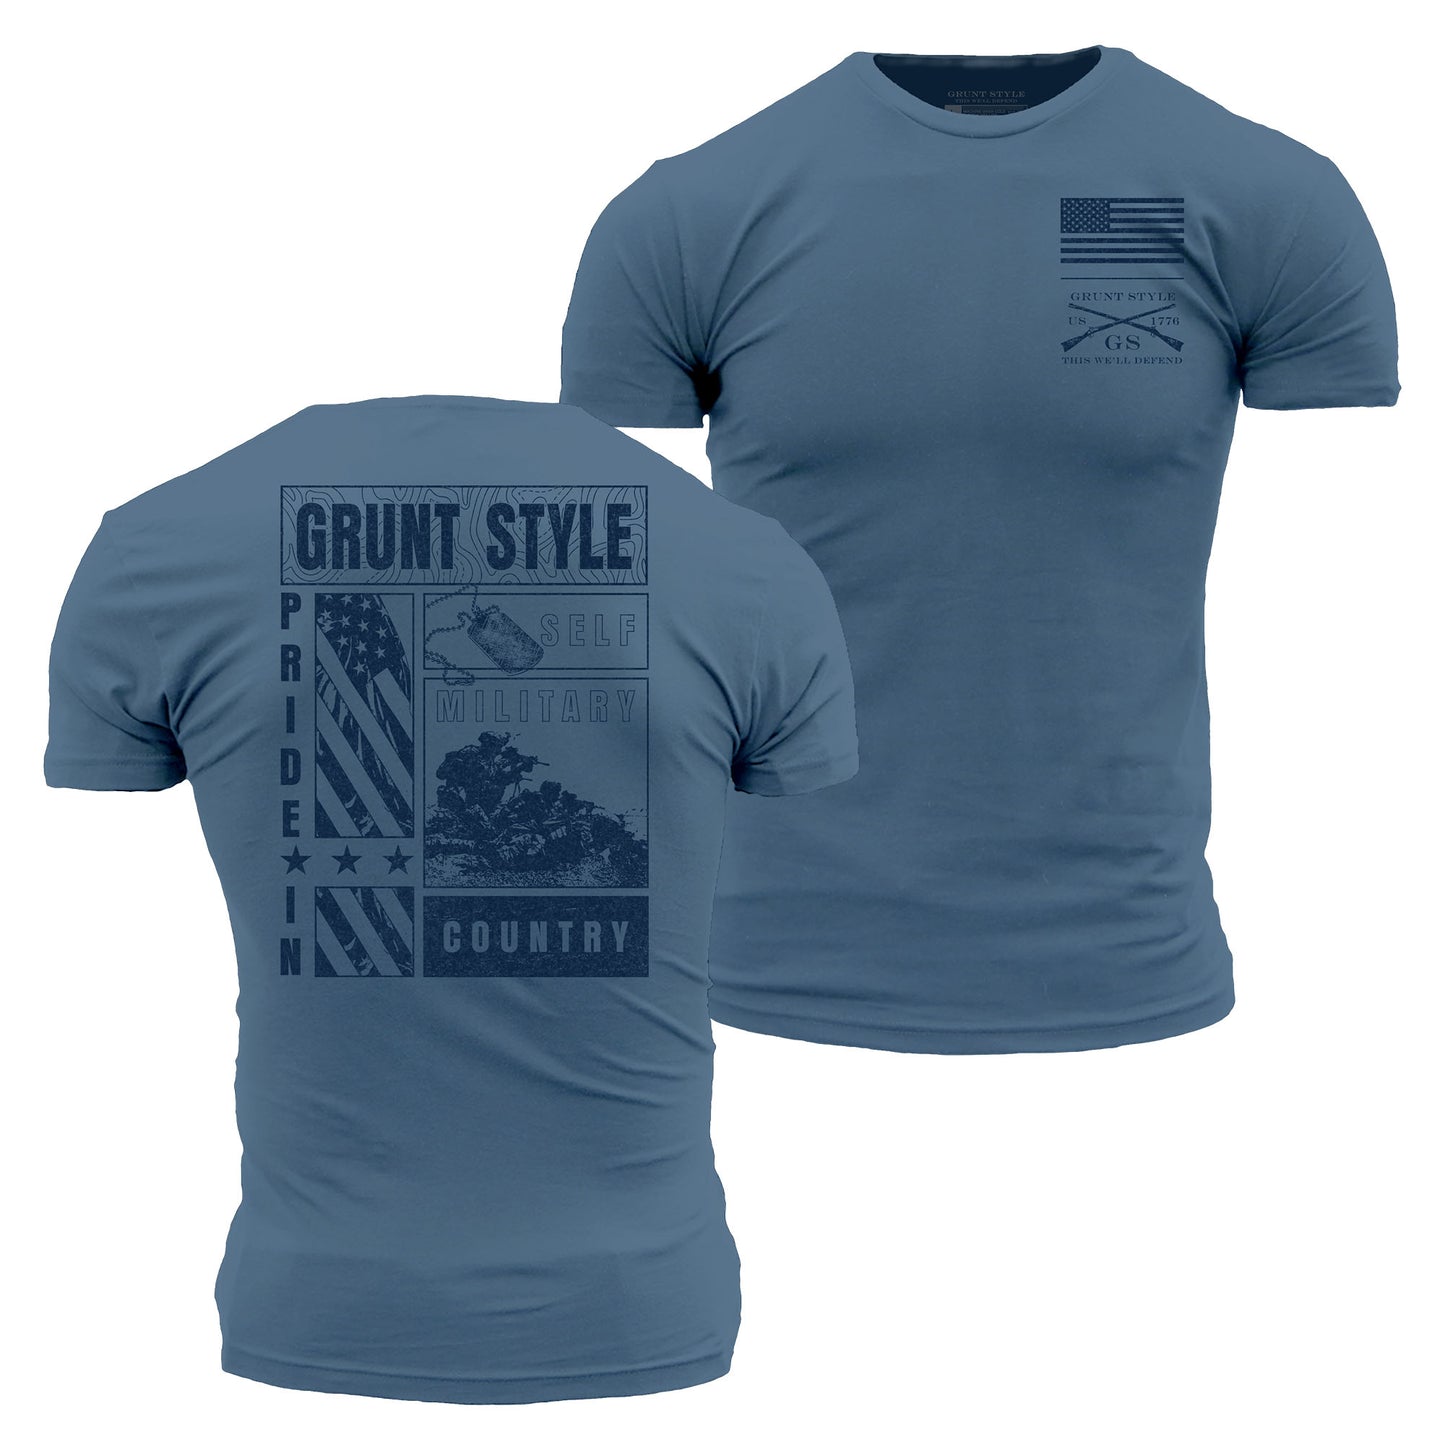 Instill Pride T-Shirt - Captain's Blue